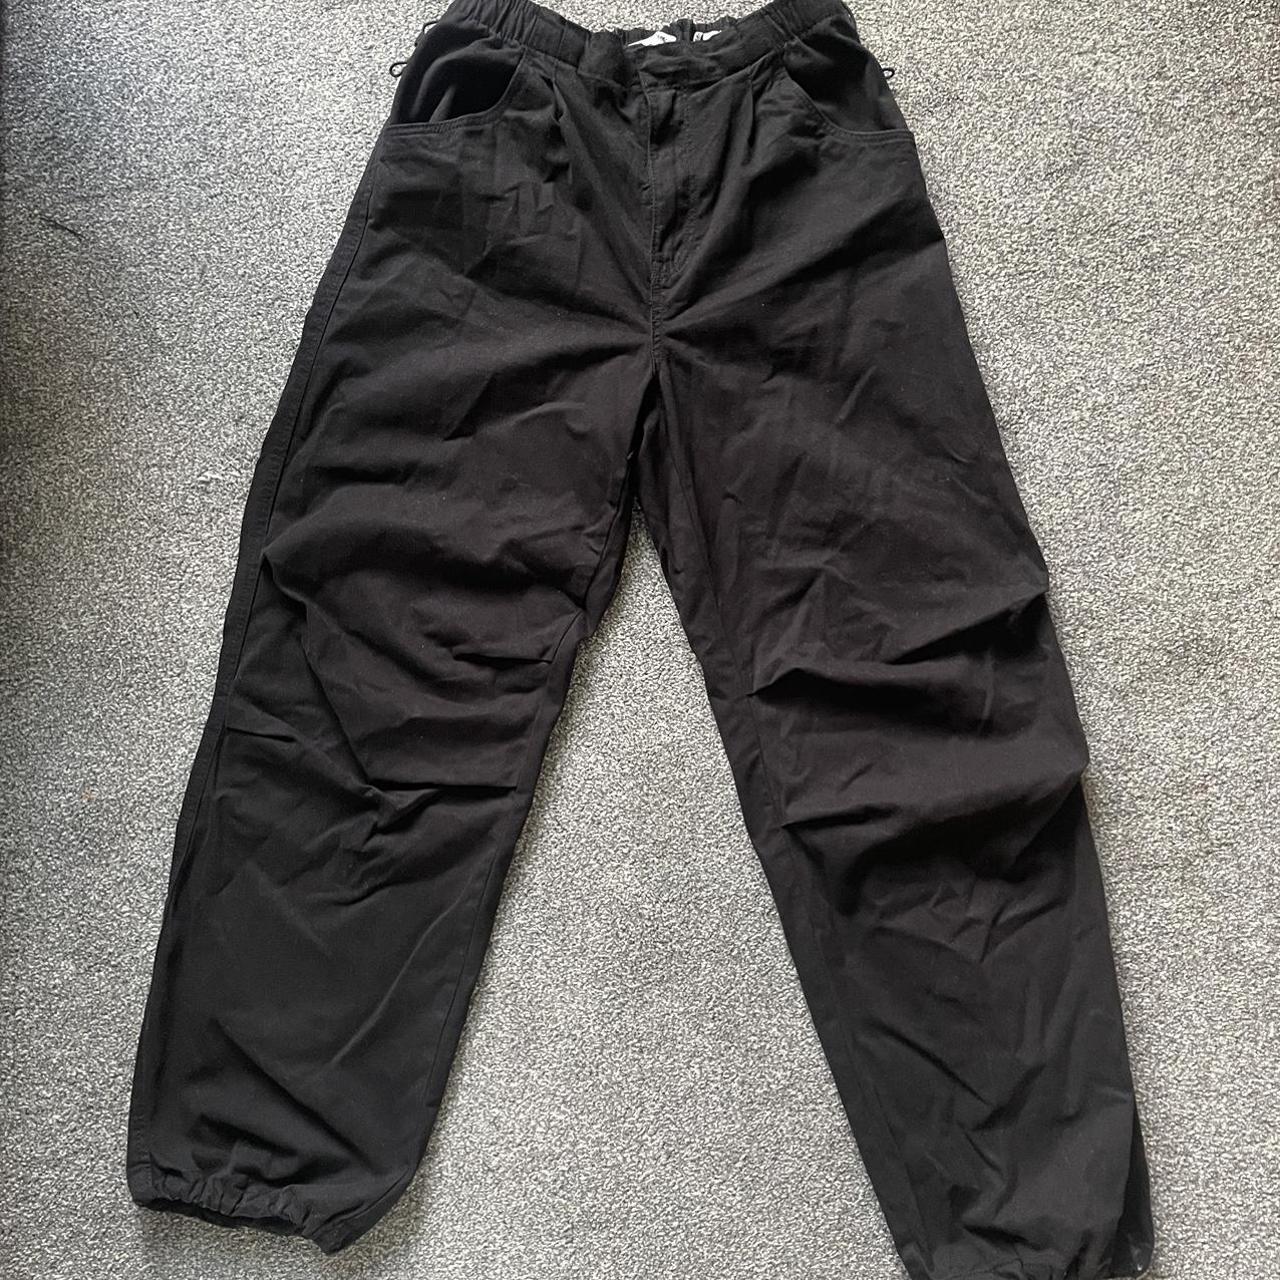 Bershka Parachute Pants in Black Size: medium... - Depop